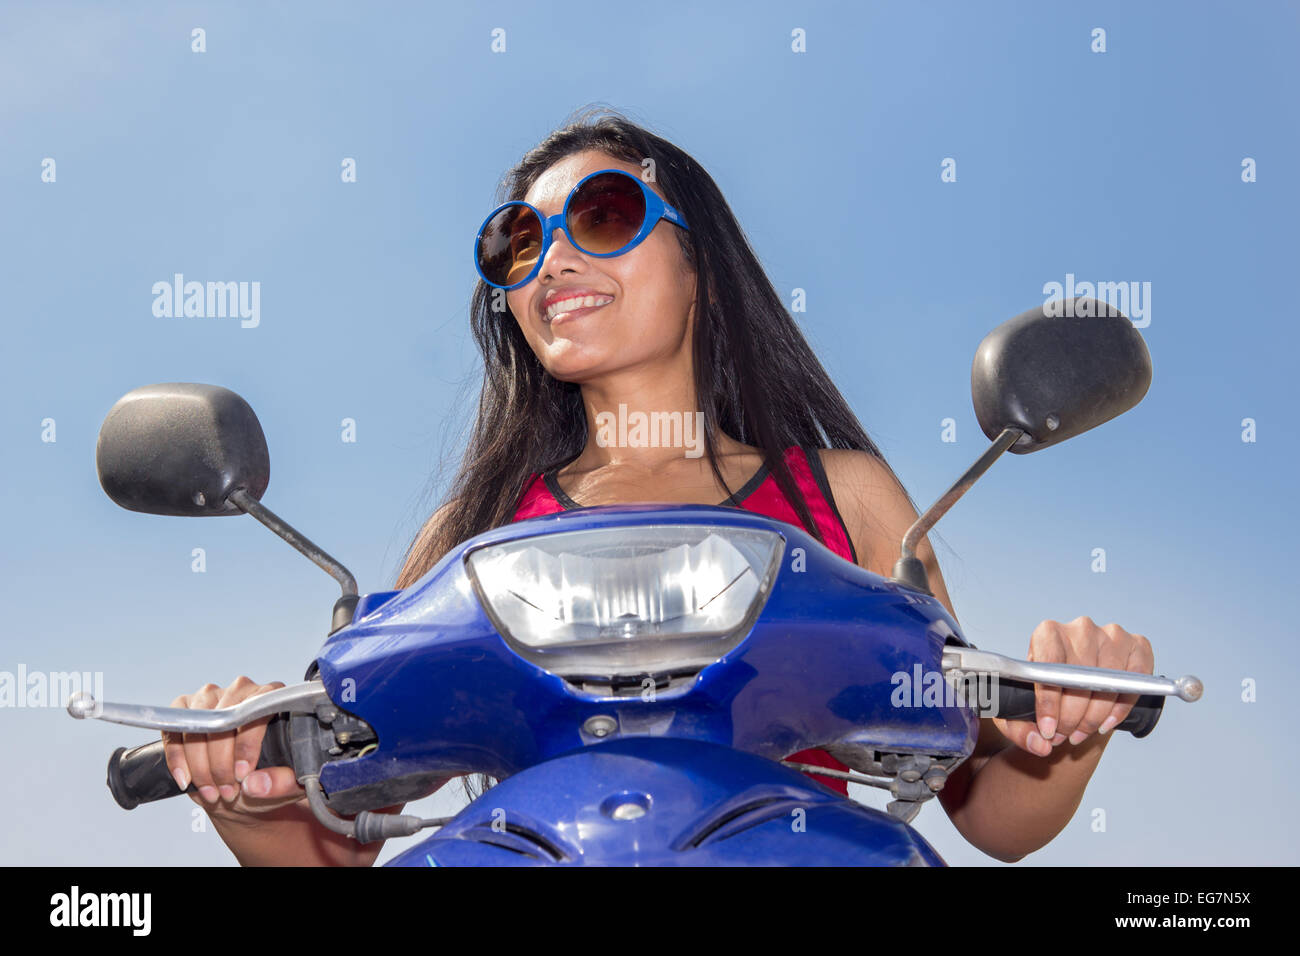 Vorderansicht einer Frau sitzt auf einem Roller auf blauem Hintergrund Stockfoto